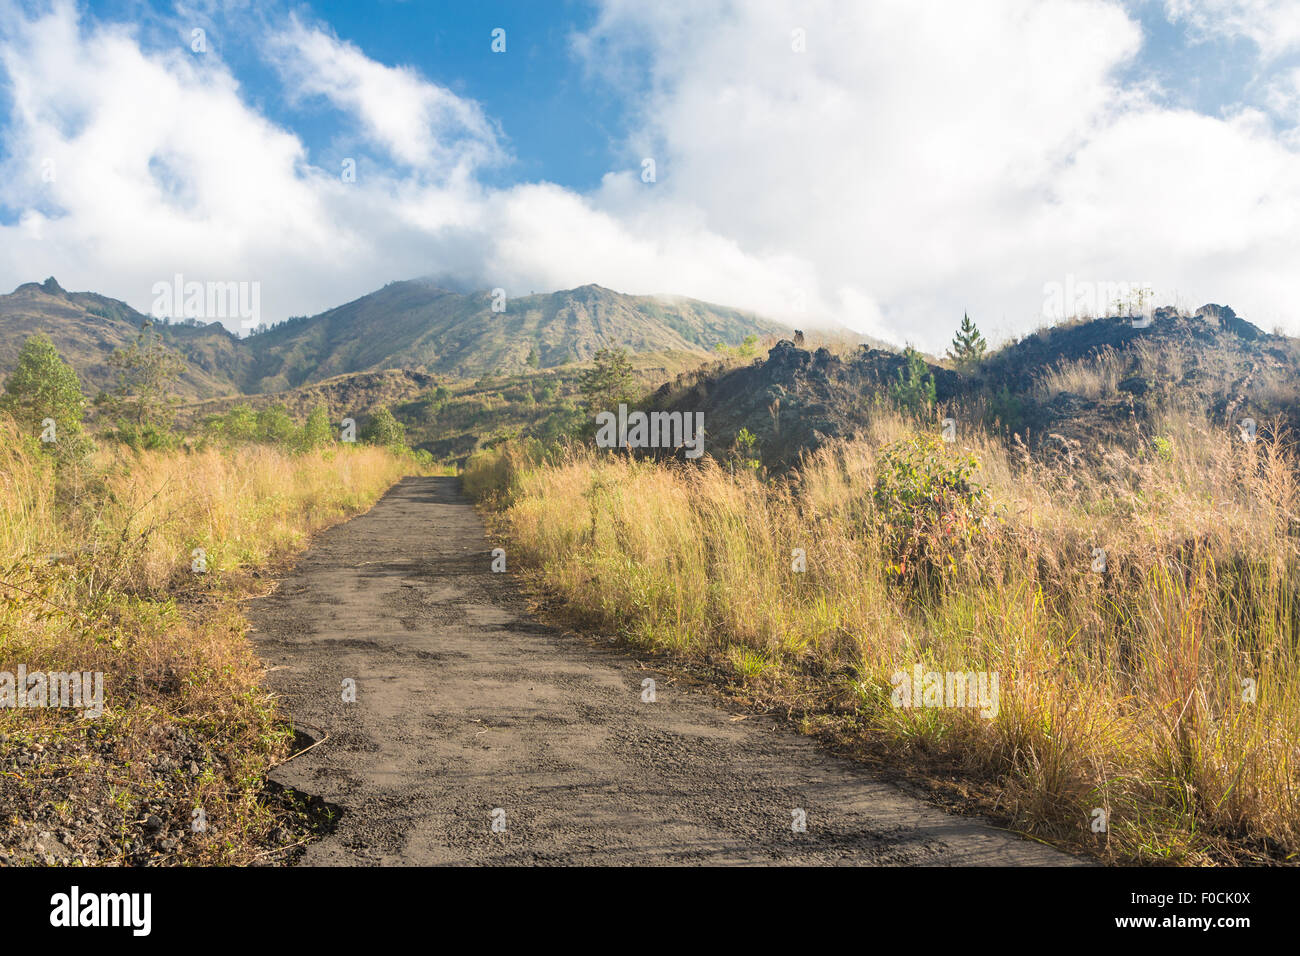 Auf dem Wanderweg zum Gipfel des Vulkans Batur in der Nähe der Ortschaft Kintamani in Bali, Indonesien Stockfoto